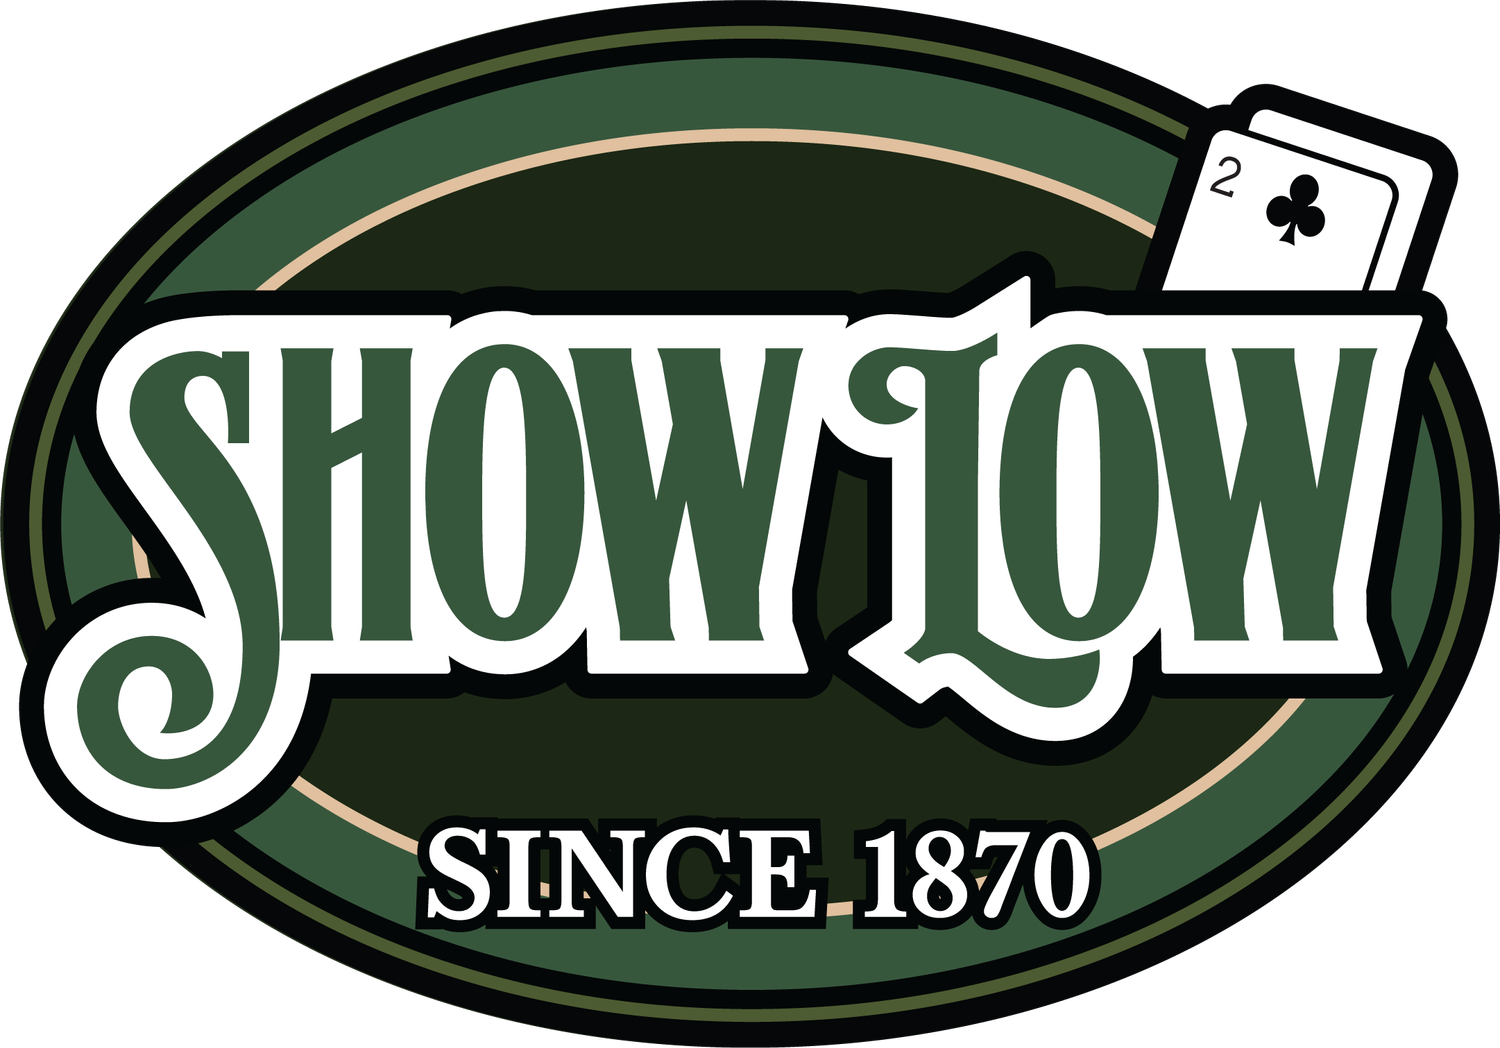 Visit Show Low